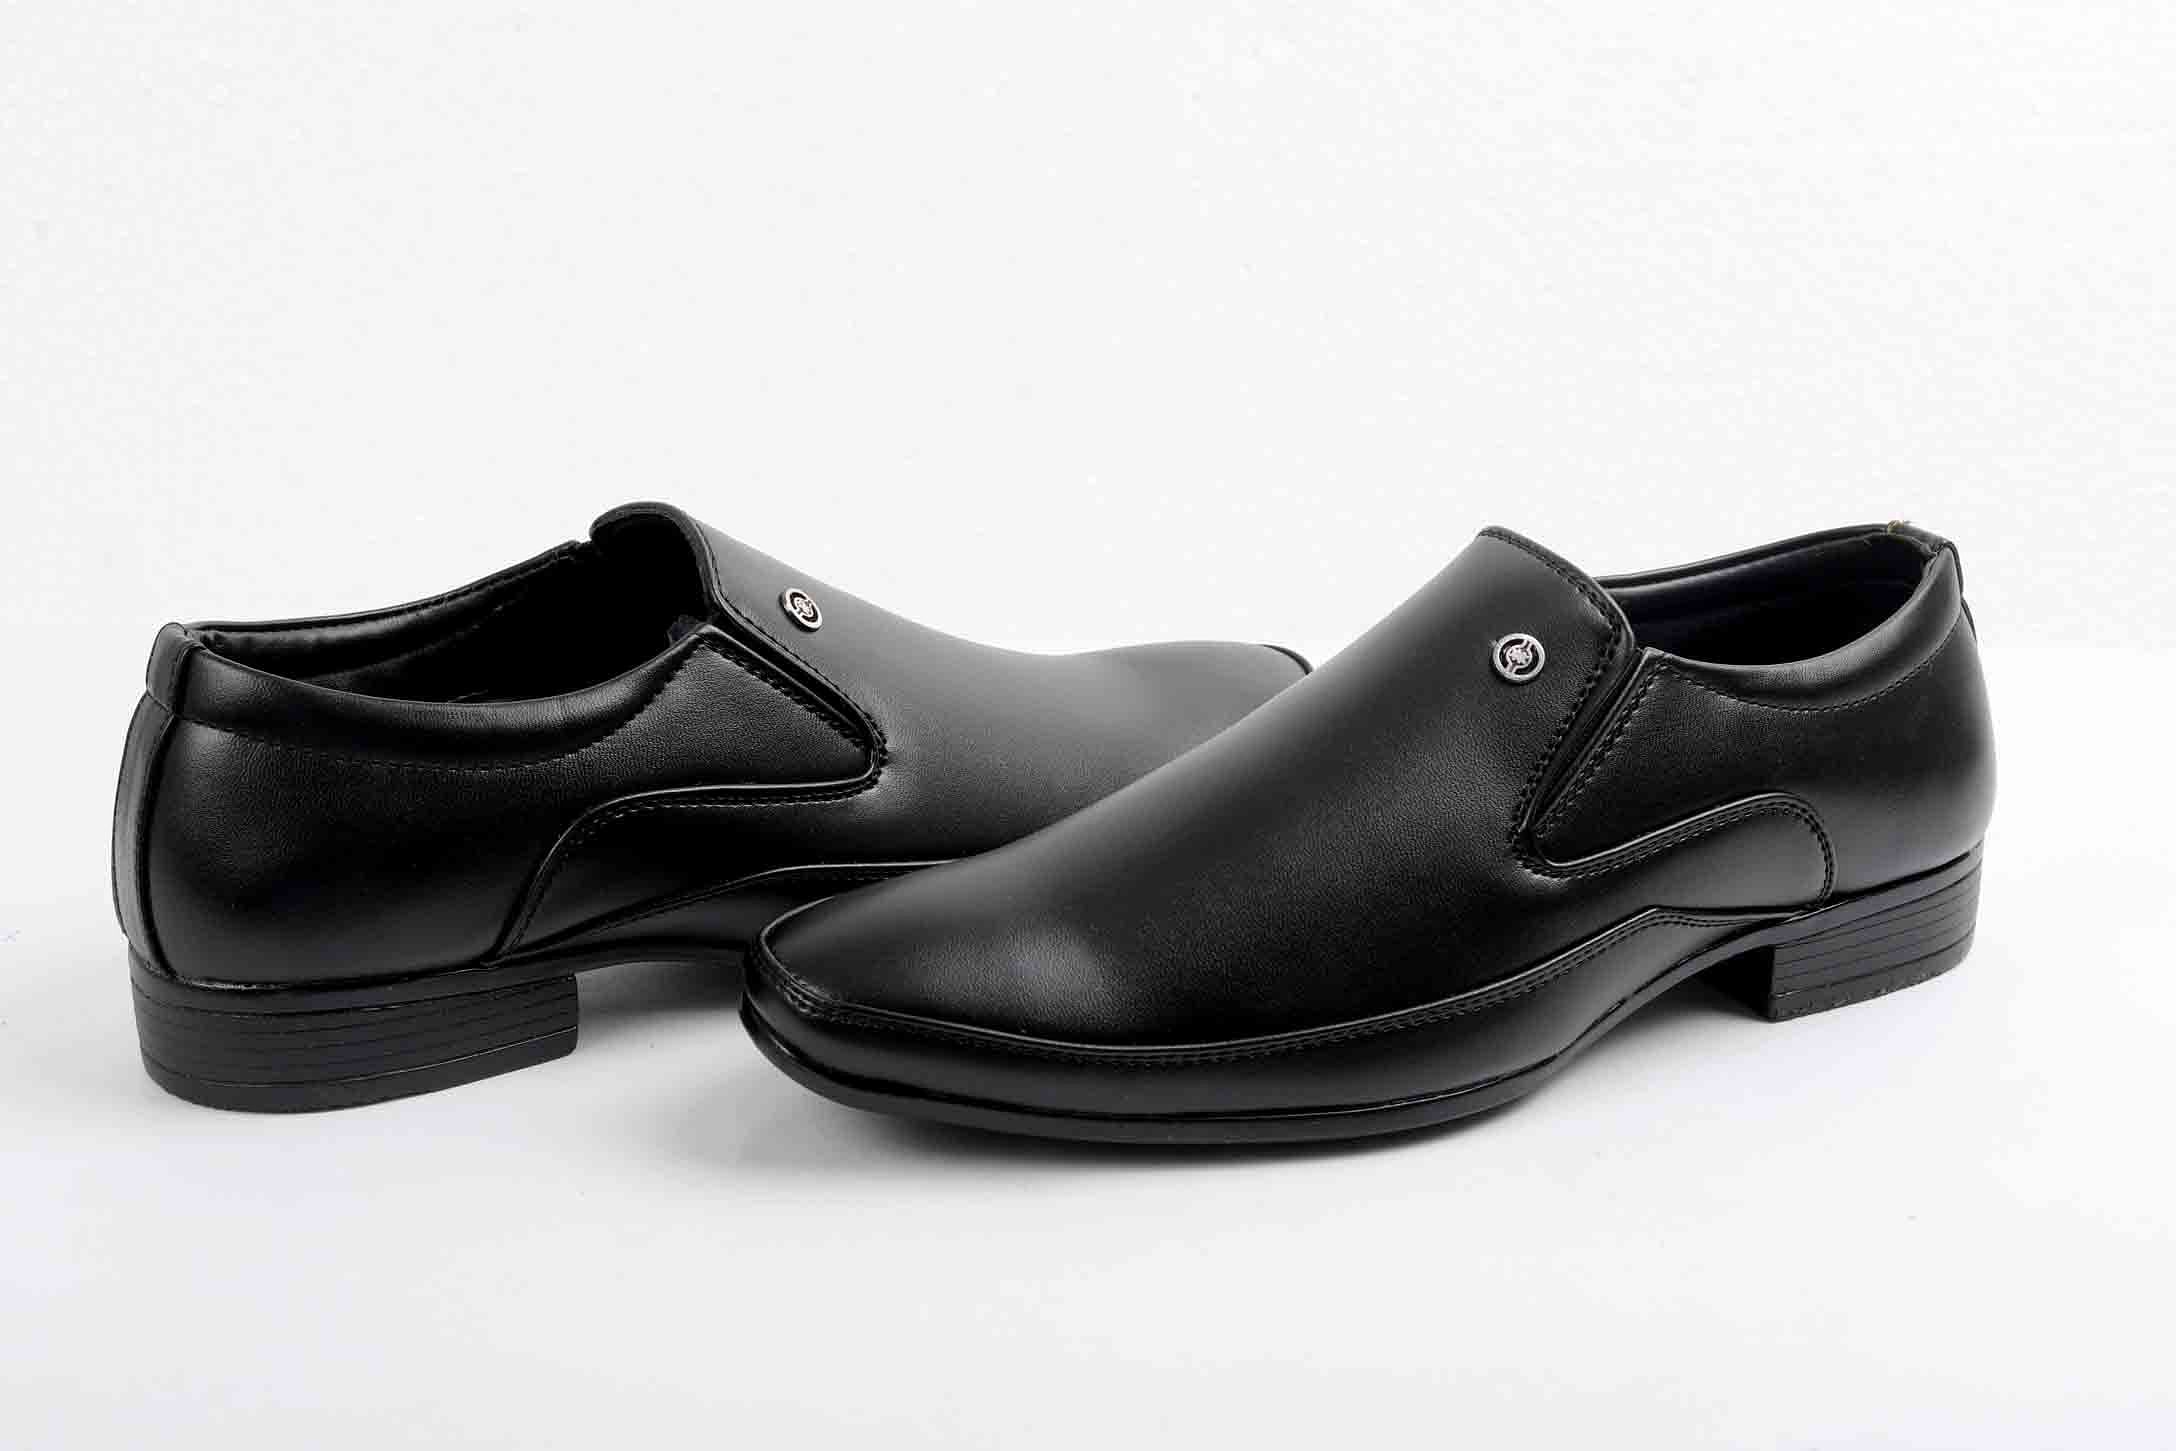 Pair-it Men moccasin Formal Shoes - Black-MN-RYDER208